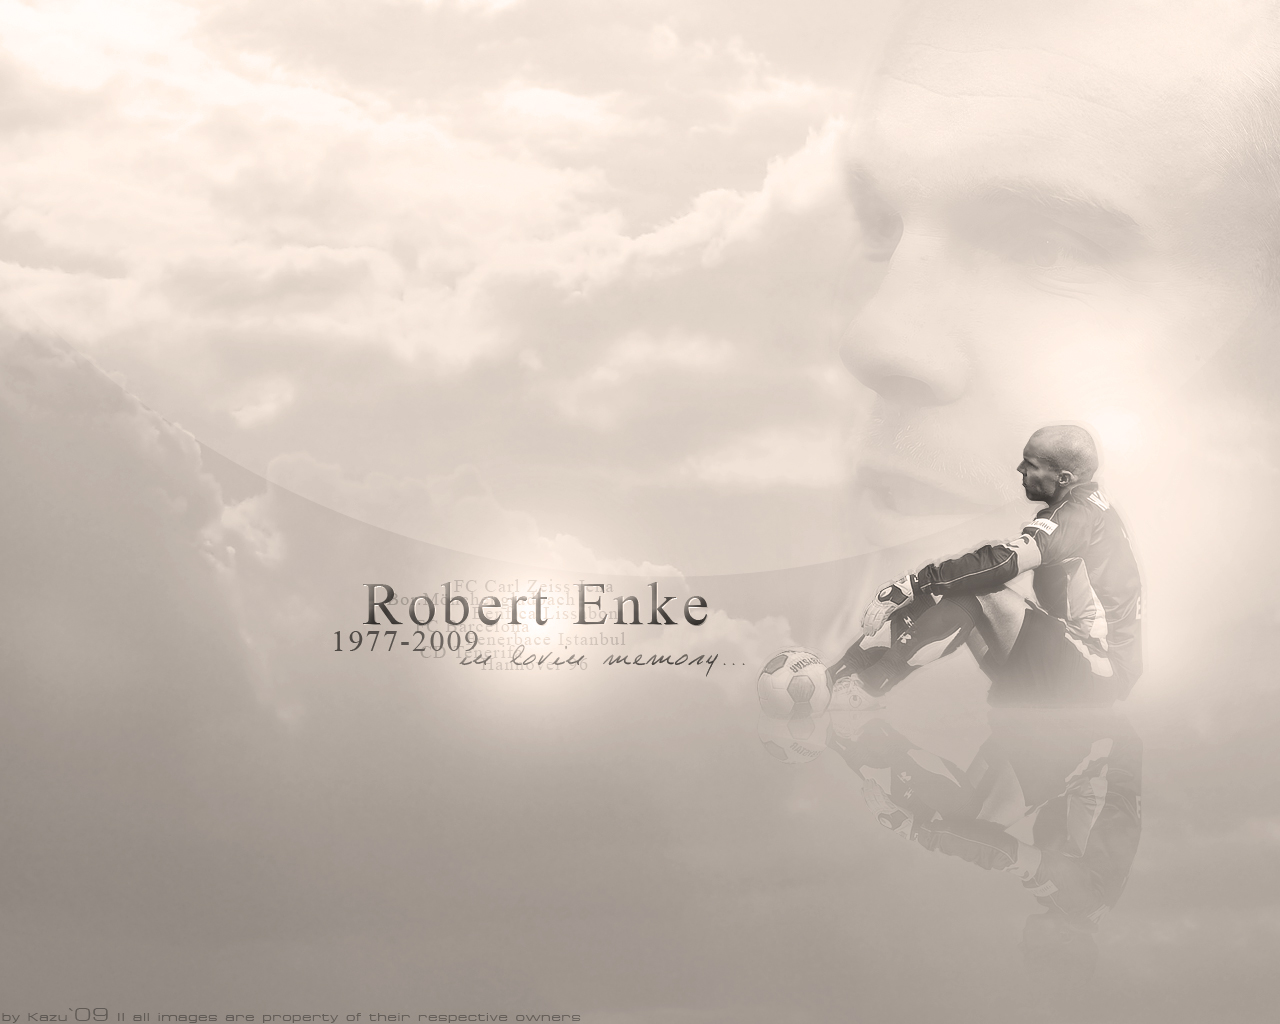 Youll Never Walk Alone Robert Enke   World Soccer Talk